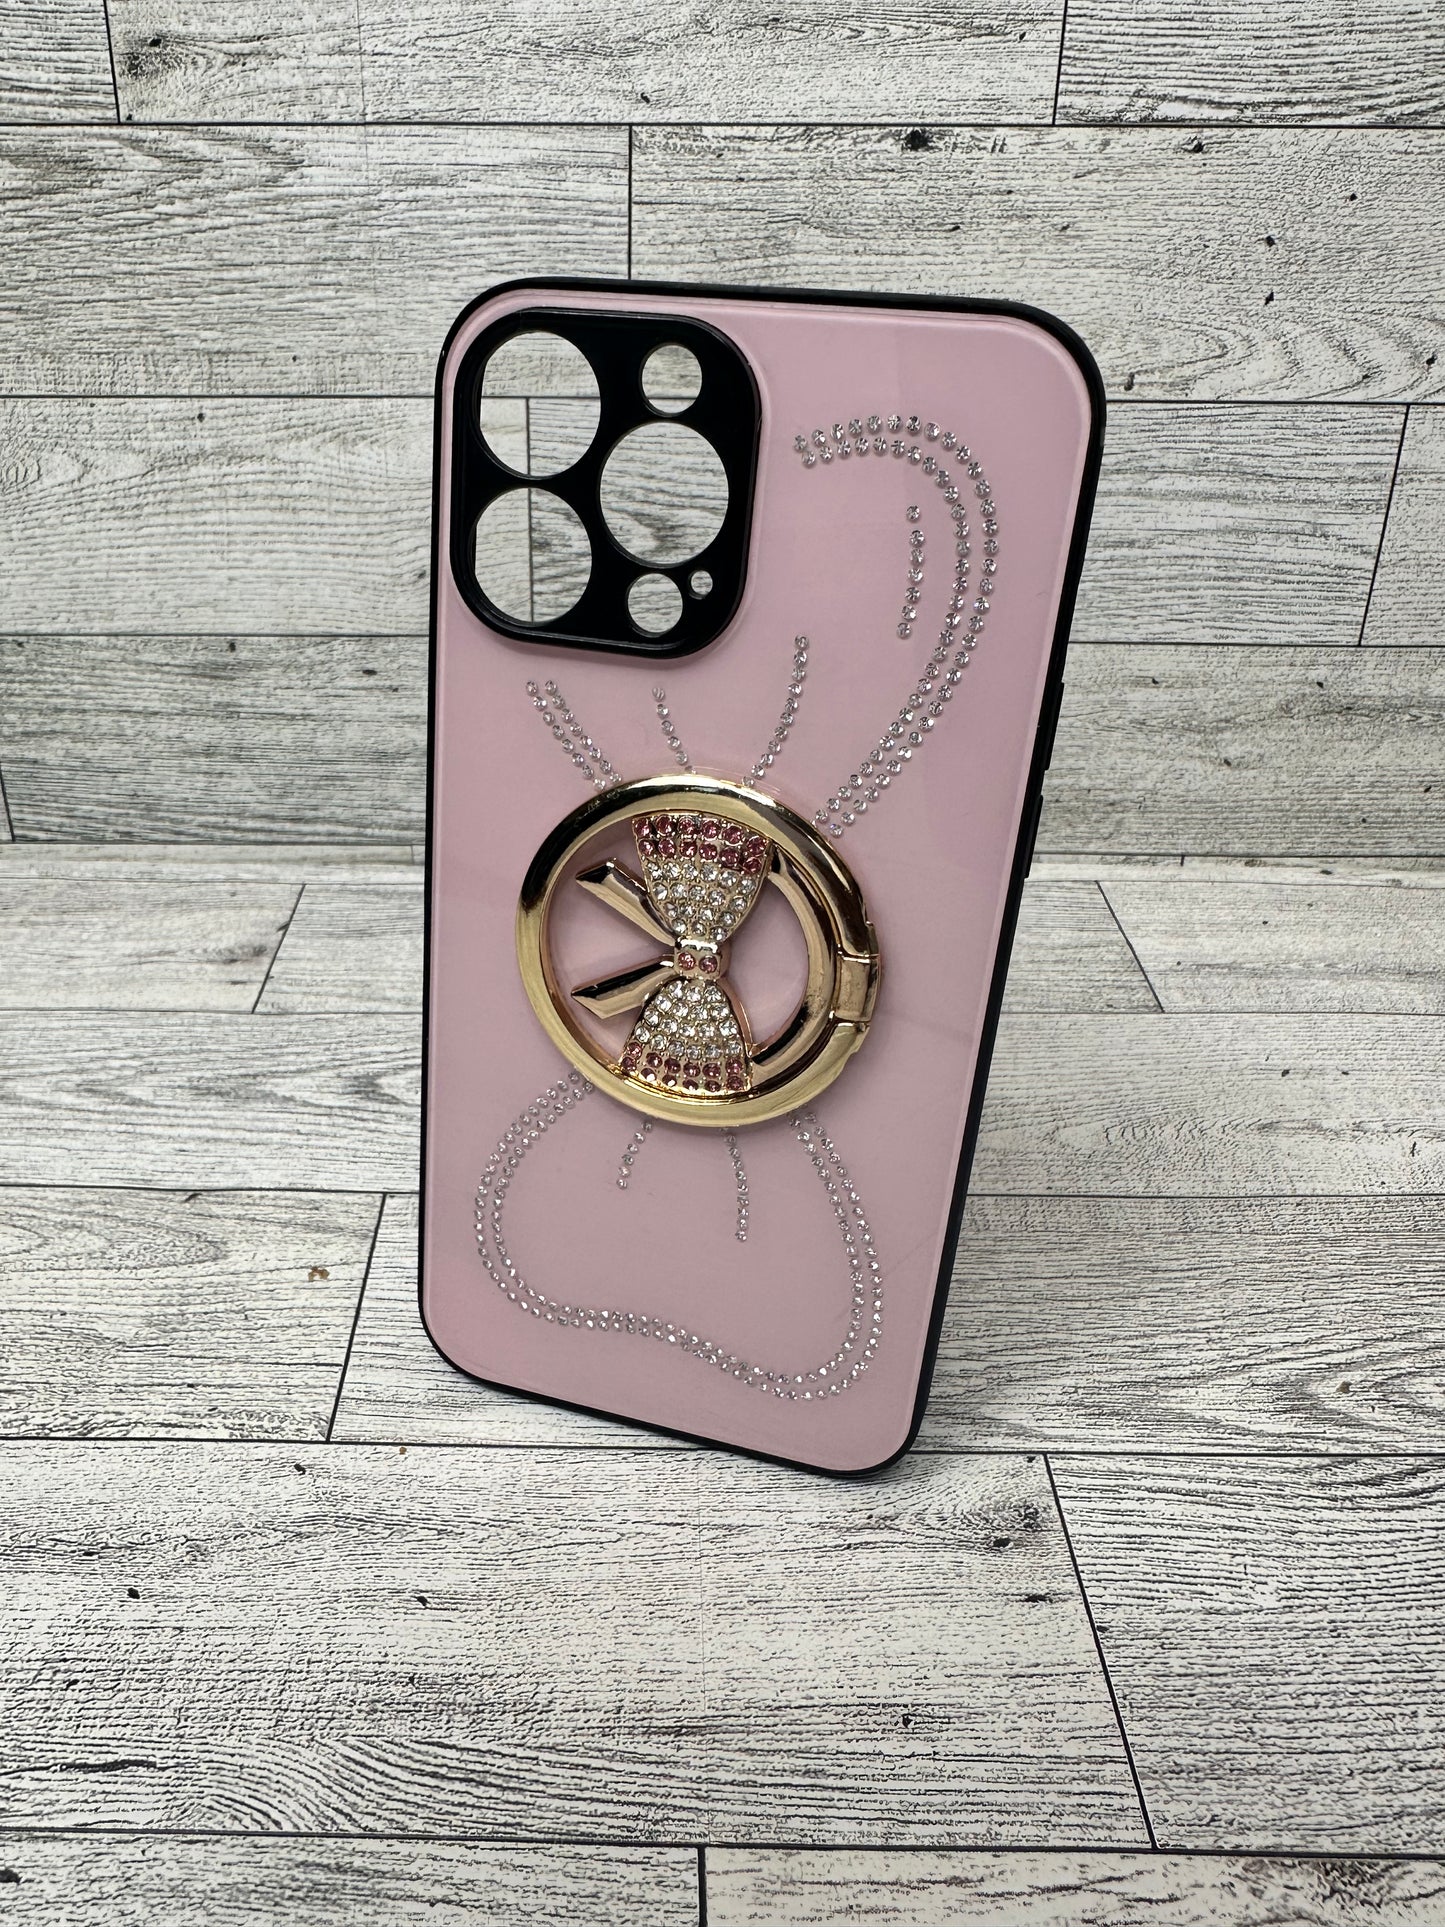 iPhone 13 Pro Max phone cases